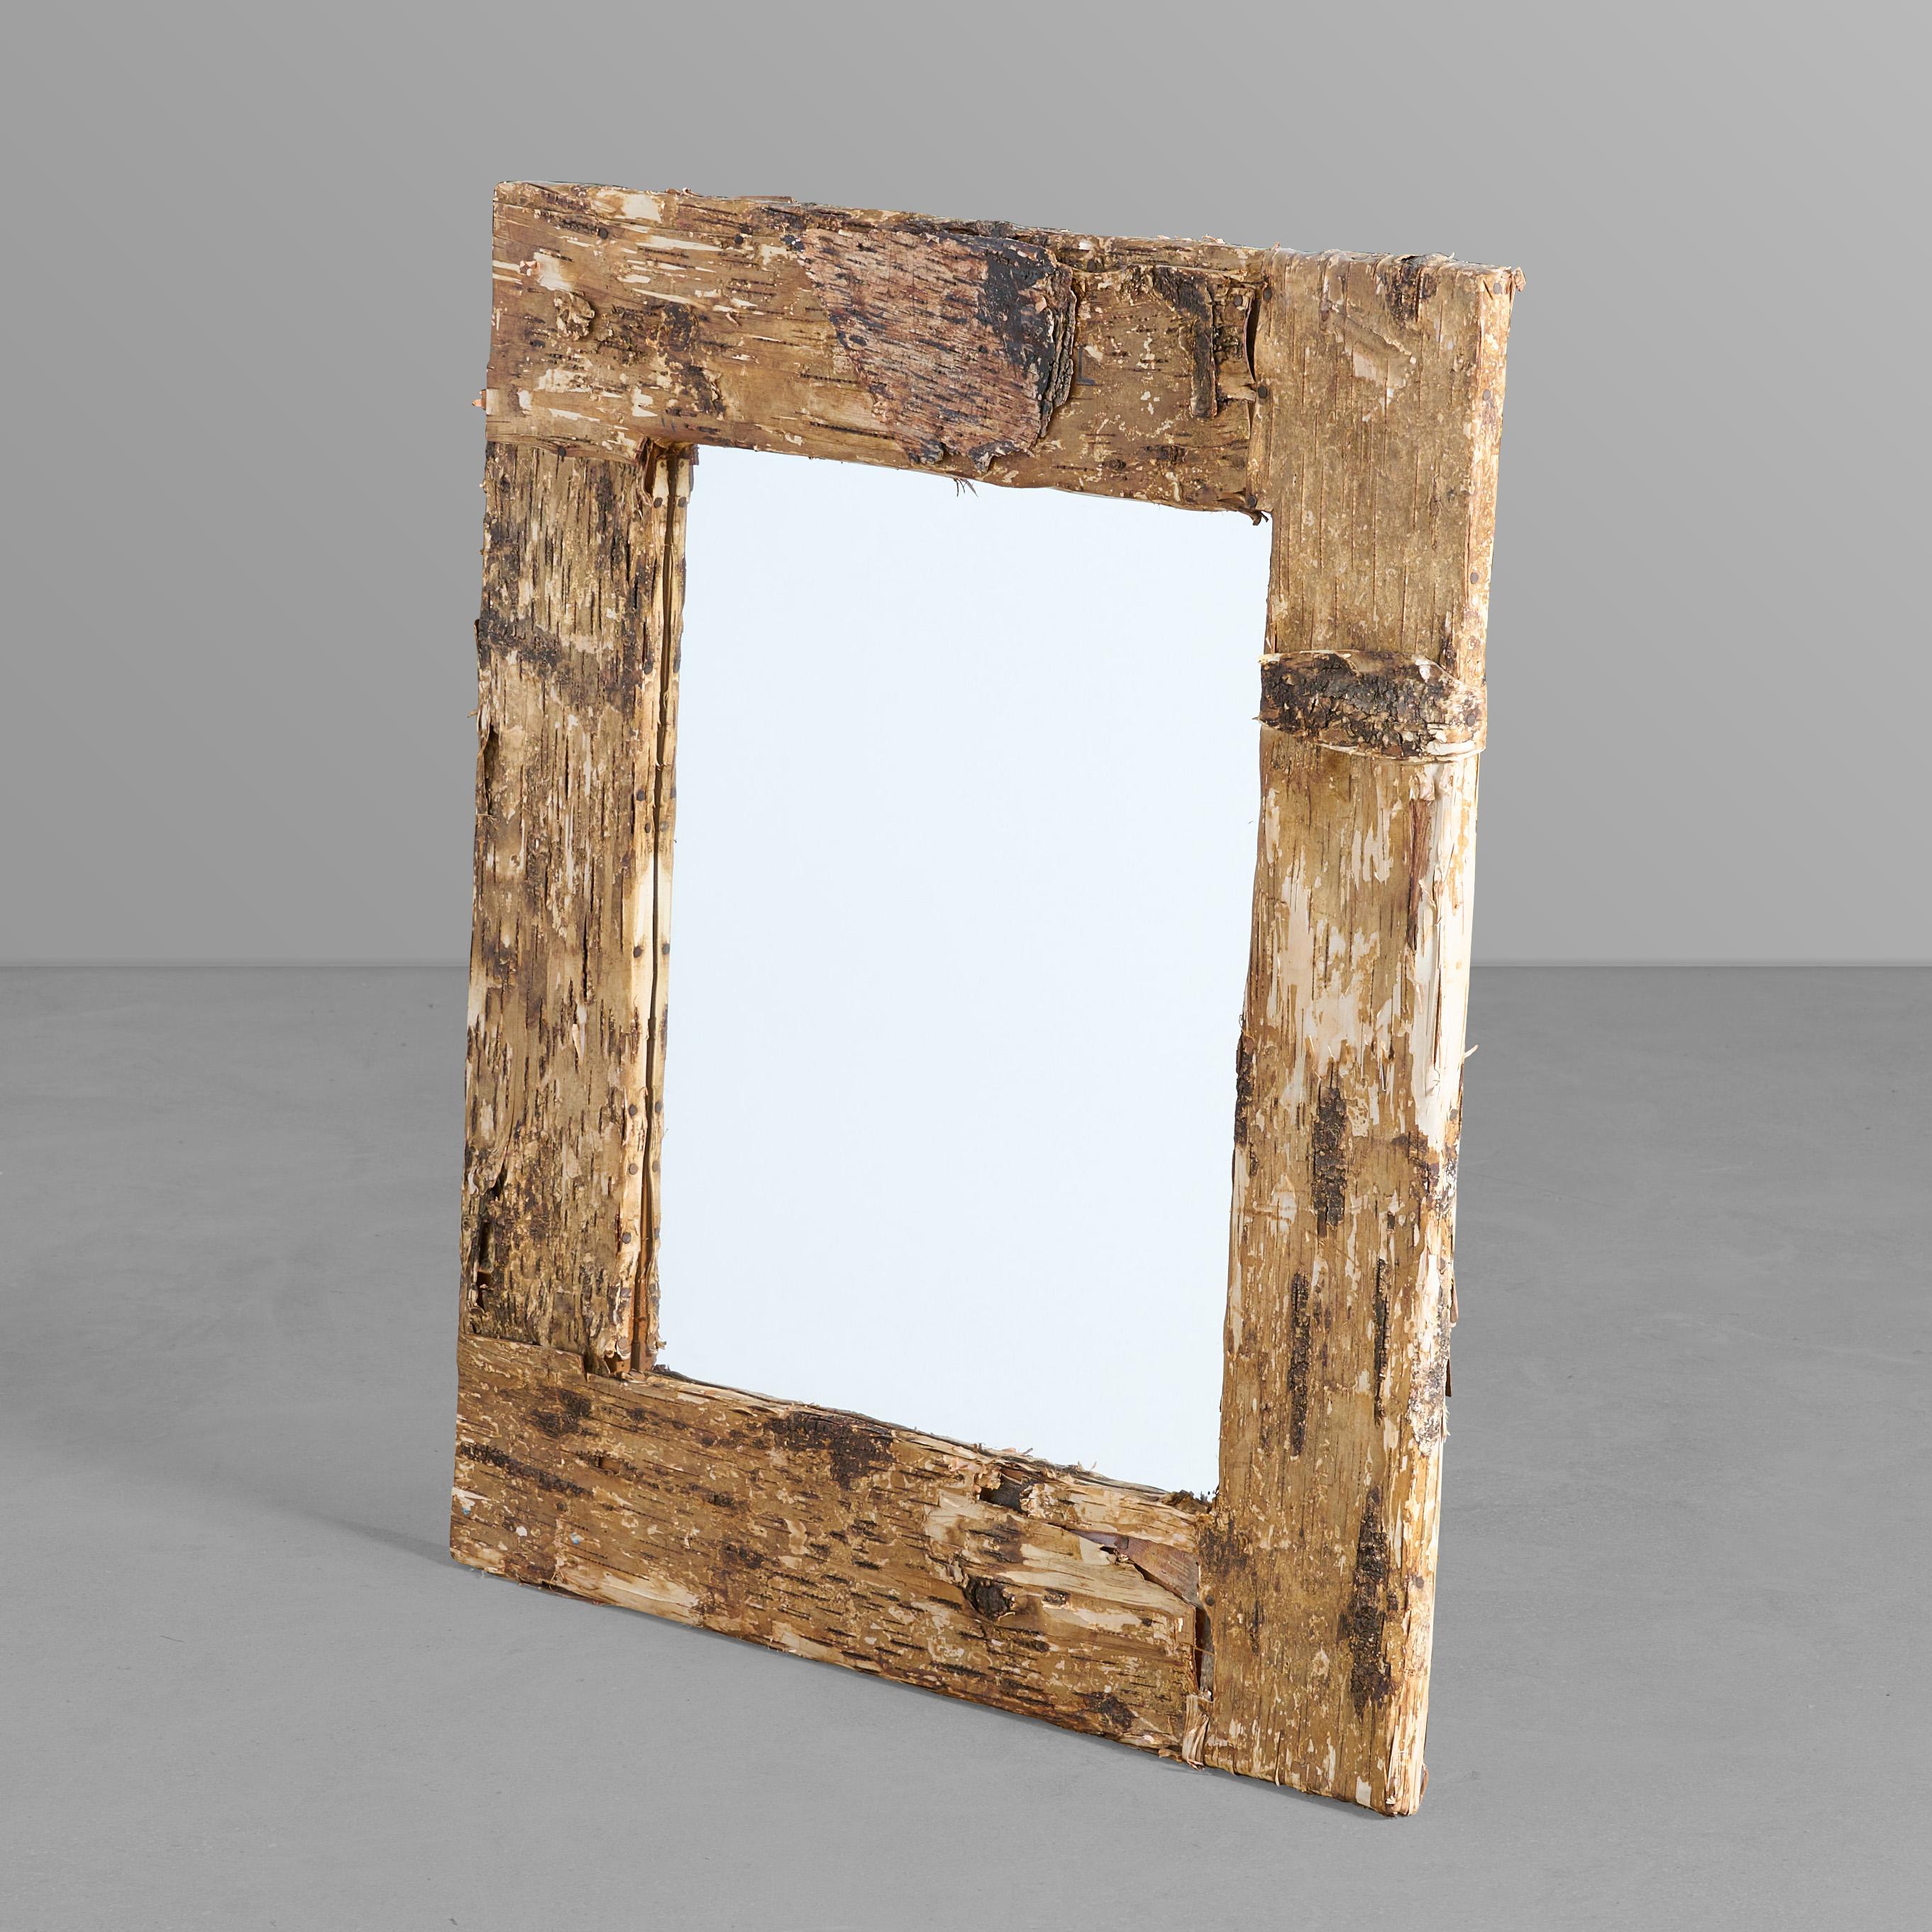 Birch bark framed mirror.